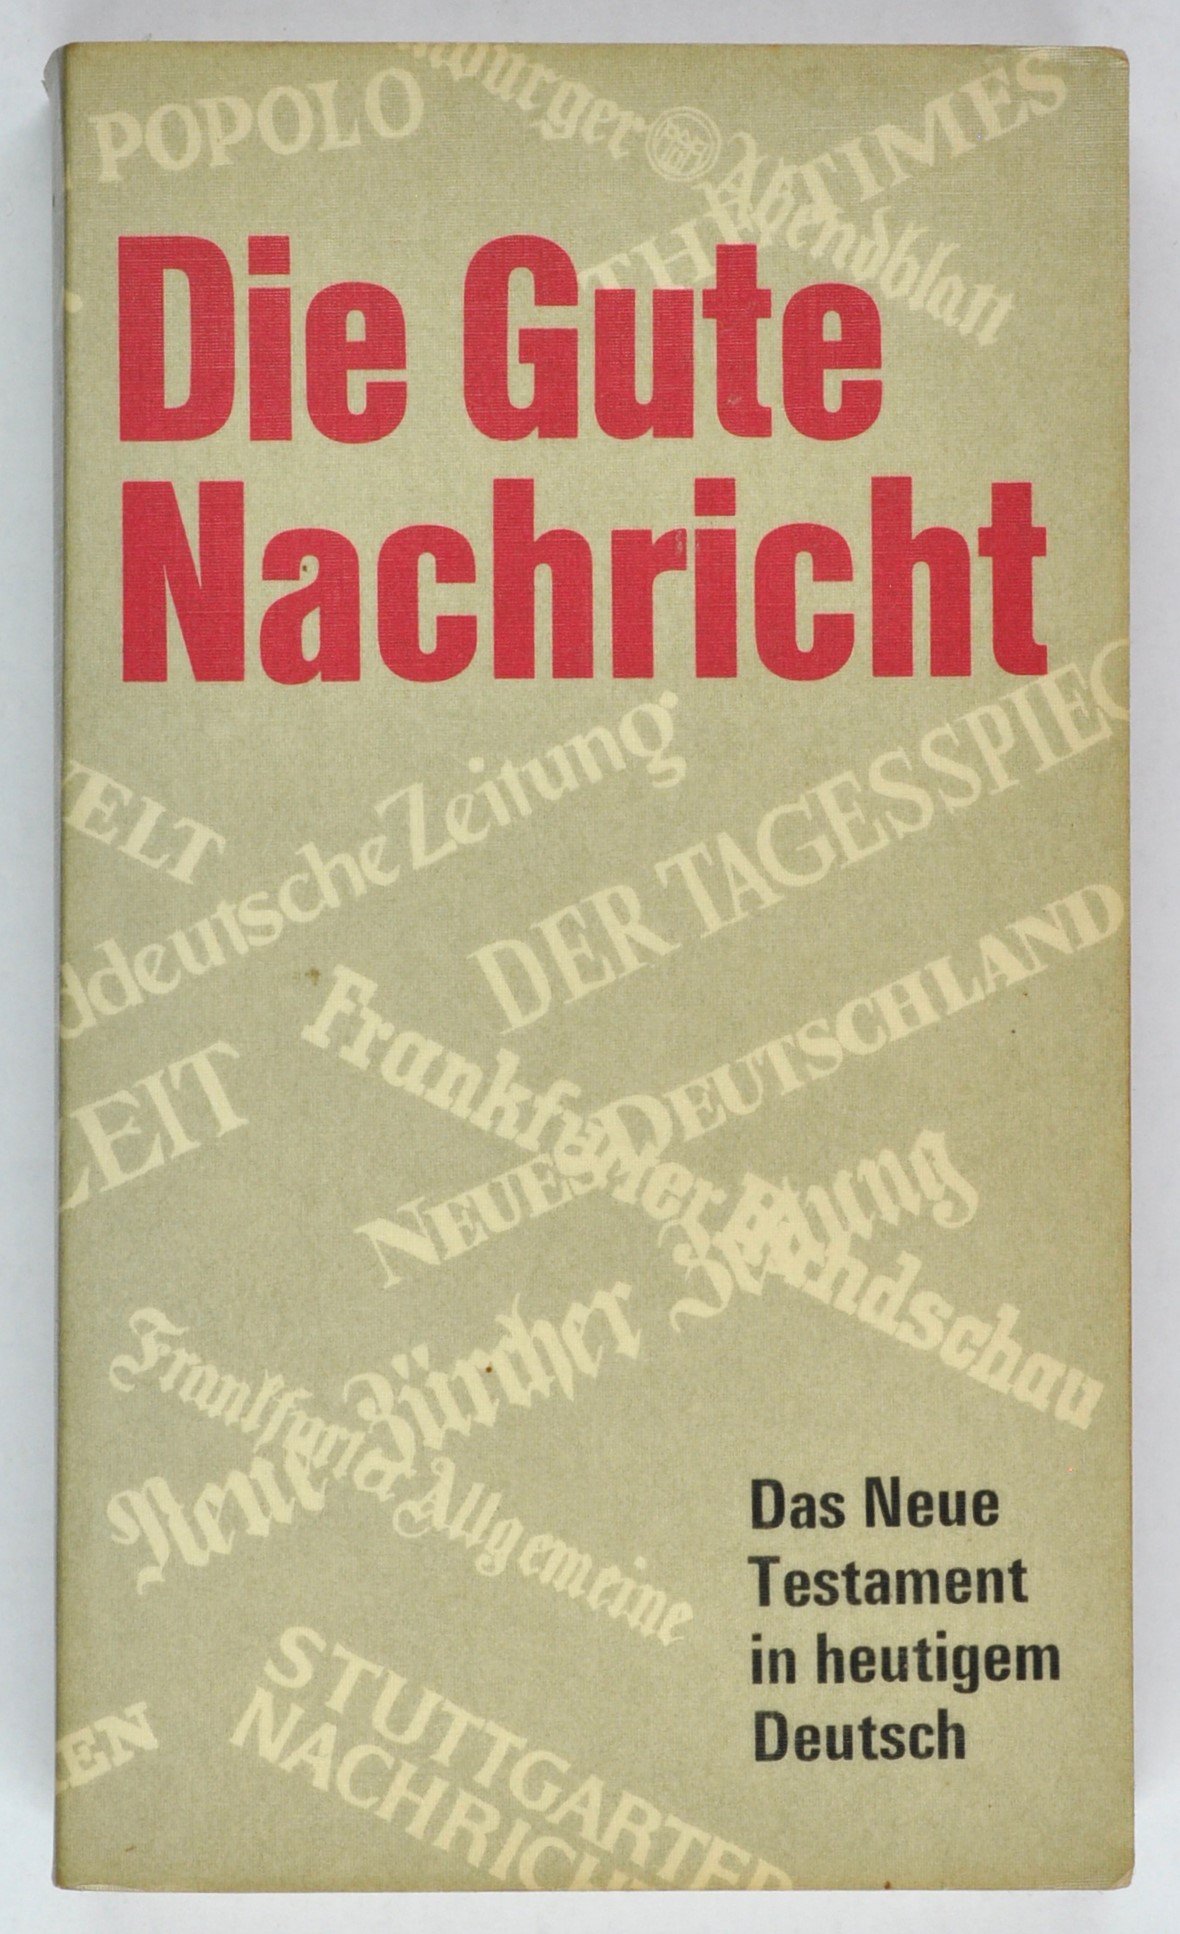 Buch: "Die Gute Nachricht". Das Neue Testament in heutigem Deutsch, Stuttgart 1971 (DDR Geschichtsmuseum im Dokumentationszentrum Perleberg CC BY-SA)